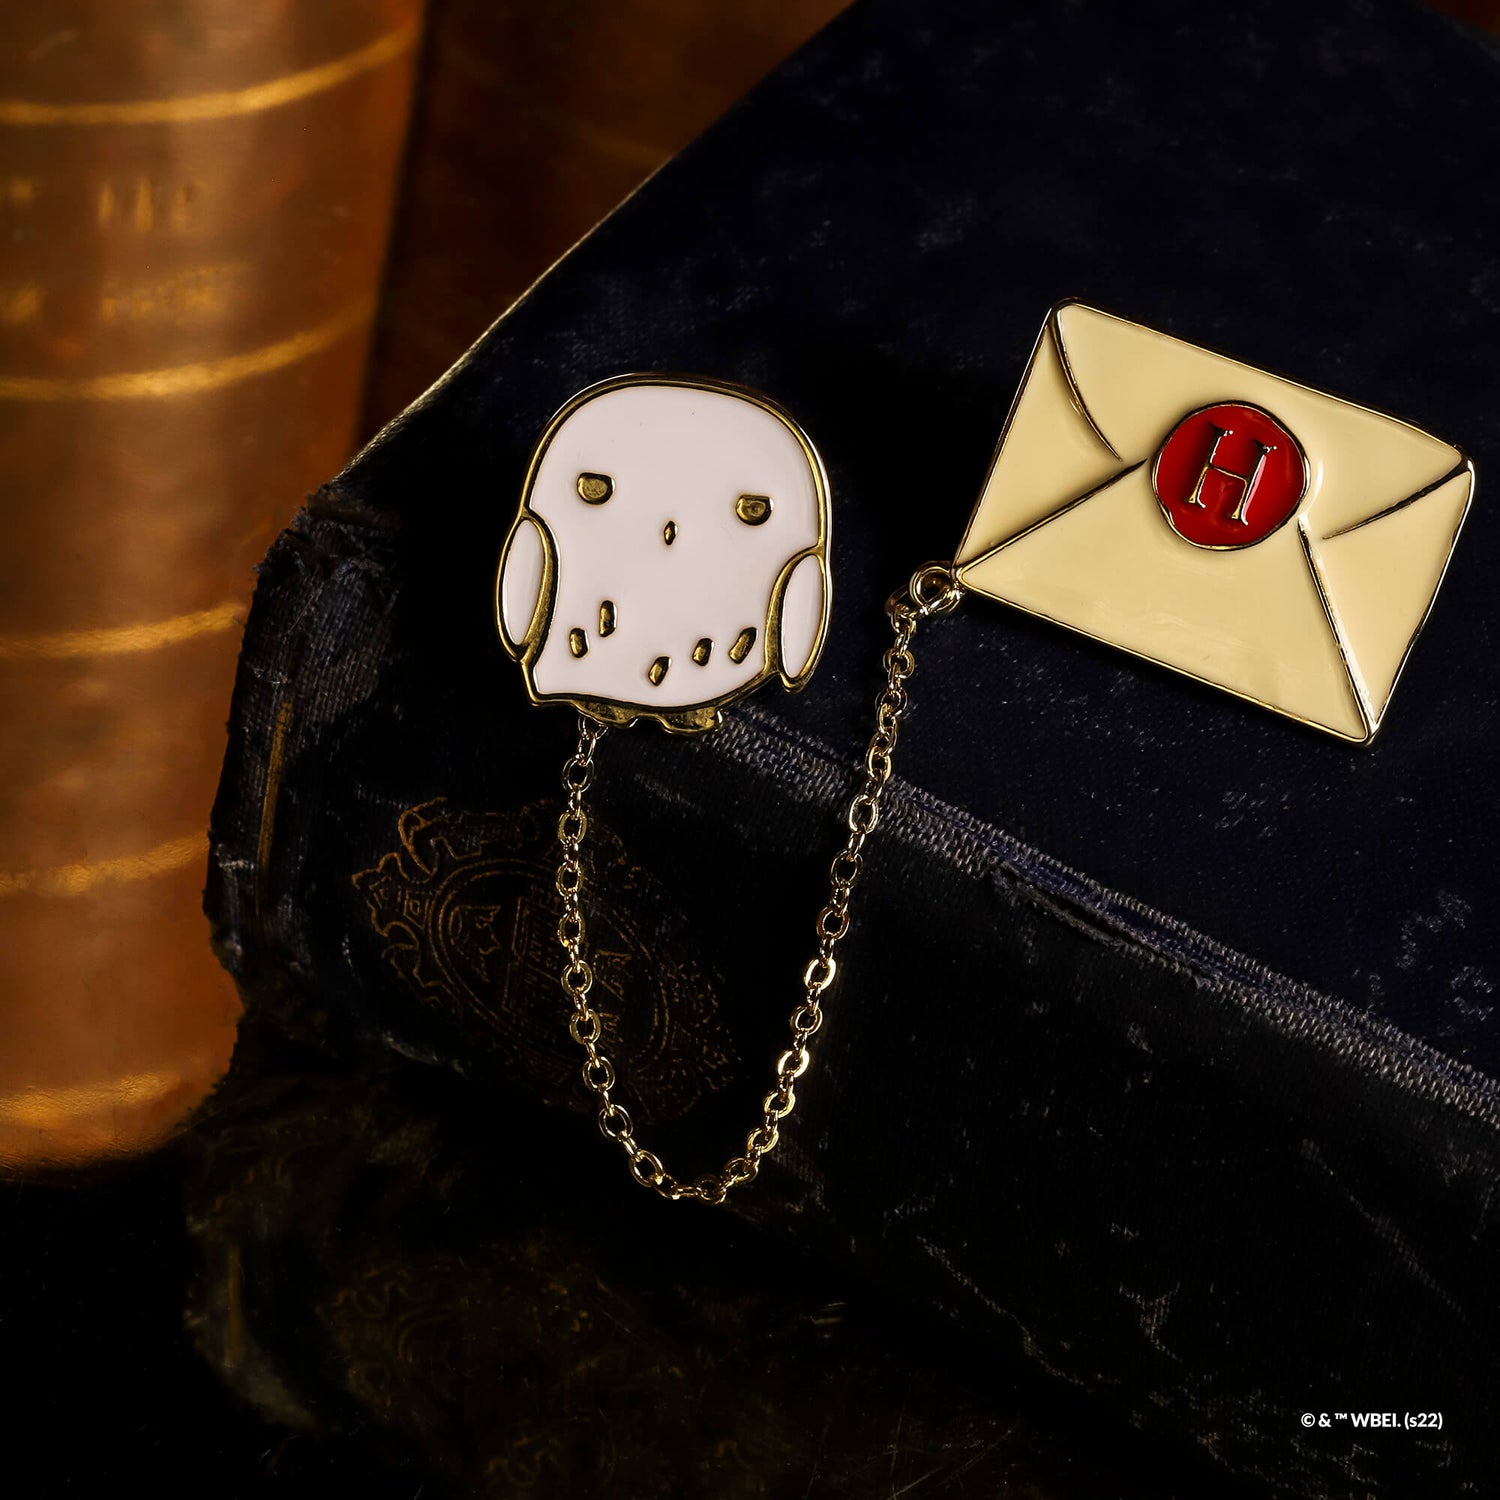 Harry Potter Enamel Pin Hogwarts Letter &amp; Hedwig